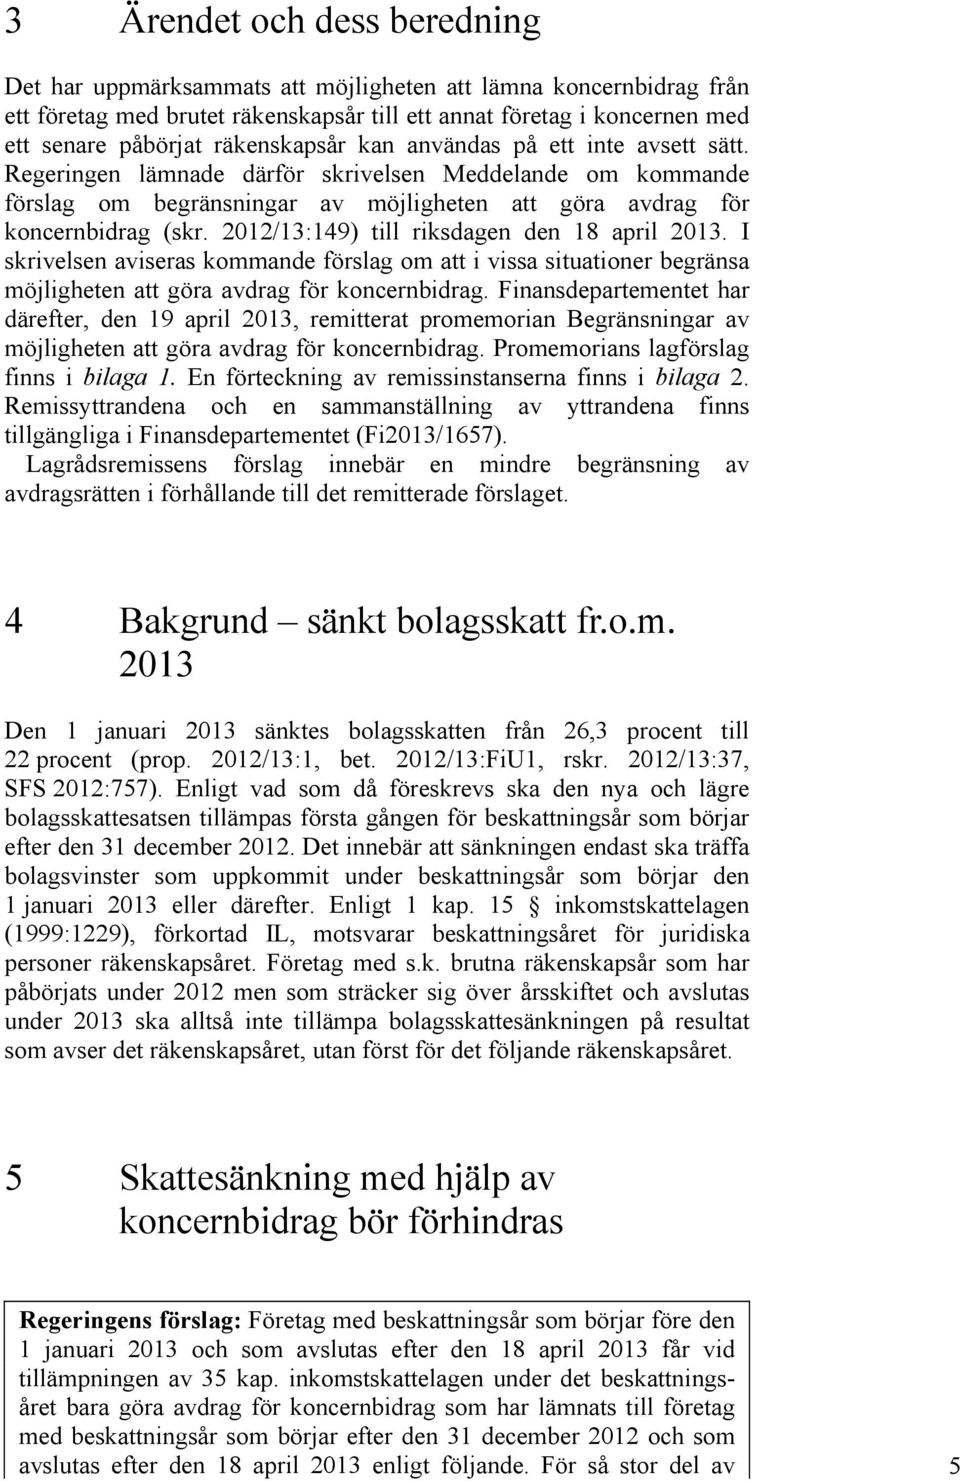 2012/13:149) till riksdagen den 18 april 2013. I skrivelsen aviseras kommande förslag om att i vissa situationer begränsa möjligheten att göra avdrag för koncernbidrag.